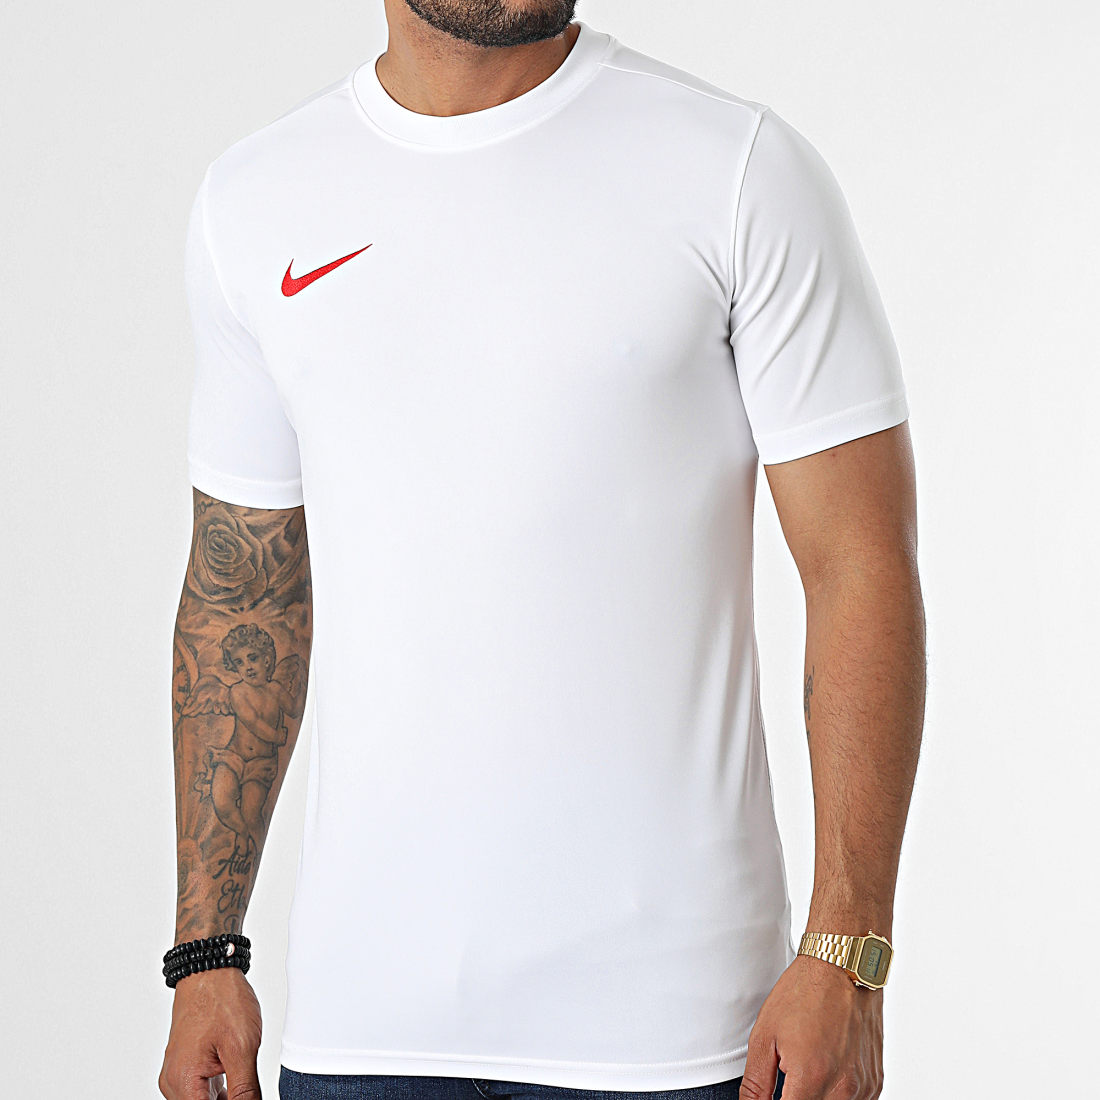 T-shirt homme NIKE Park Vii Blanc - Adulte - Coupe classique Blanc